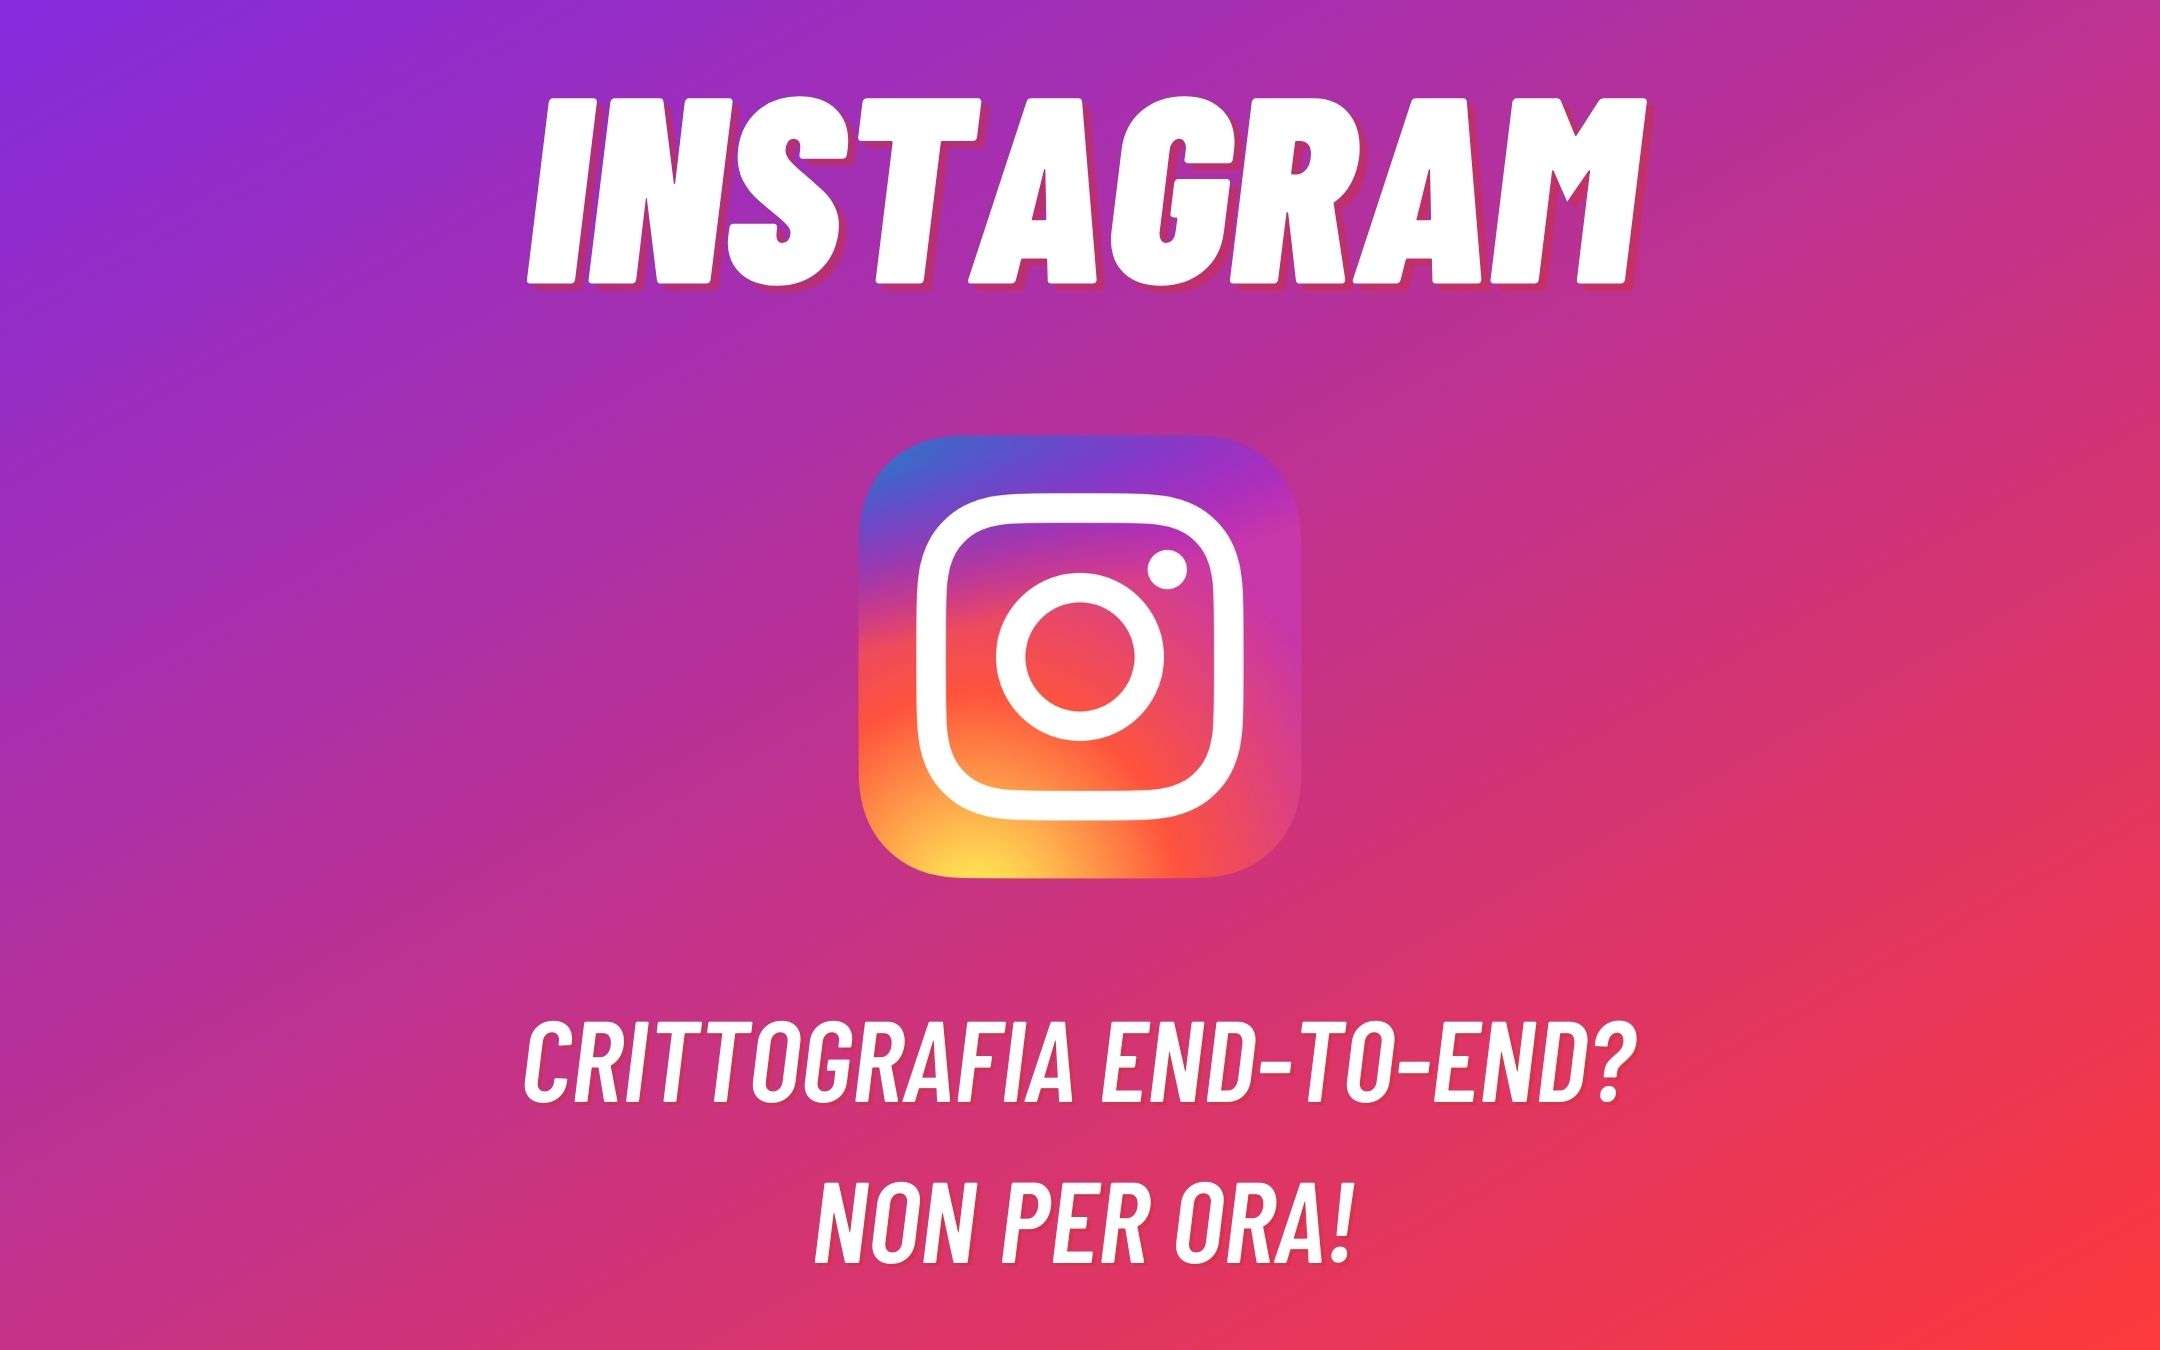 Instagram: la crittografia end-to-end? Non per ora!